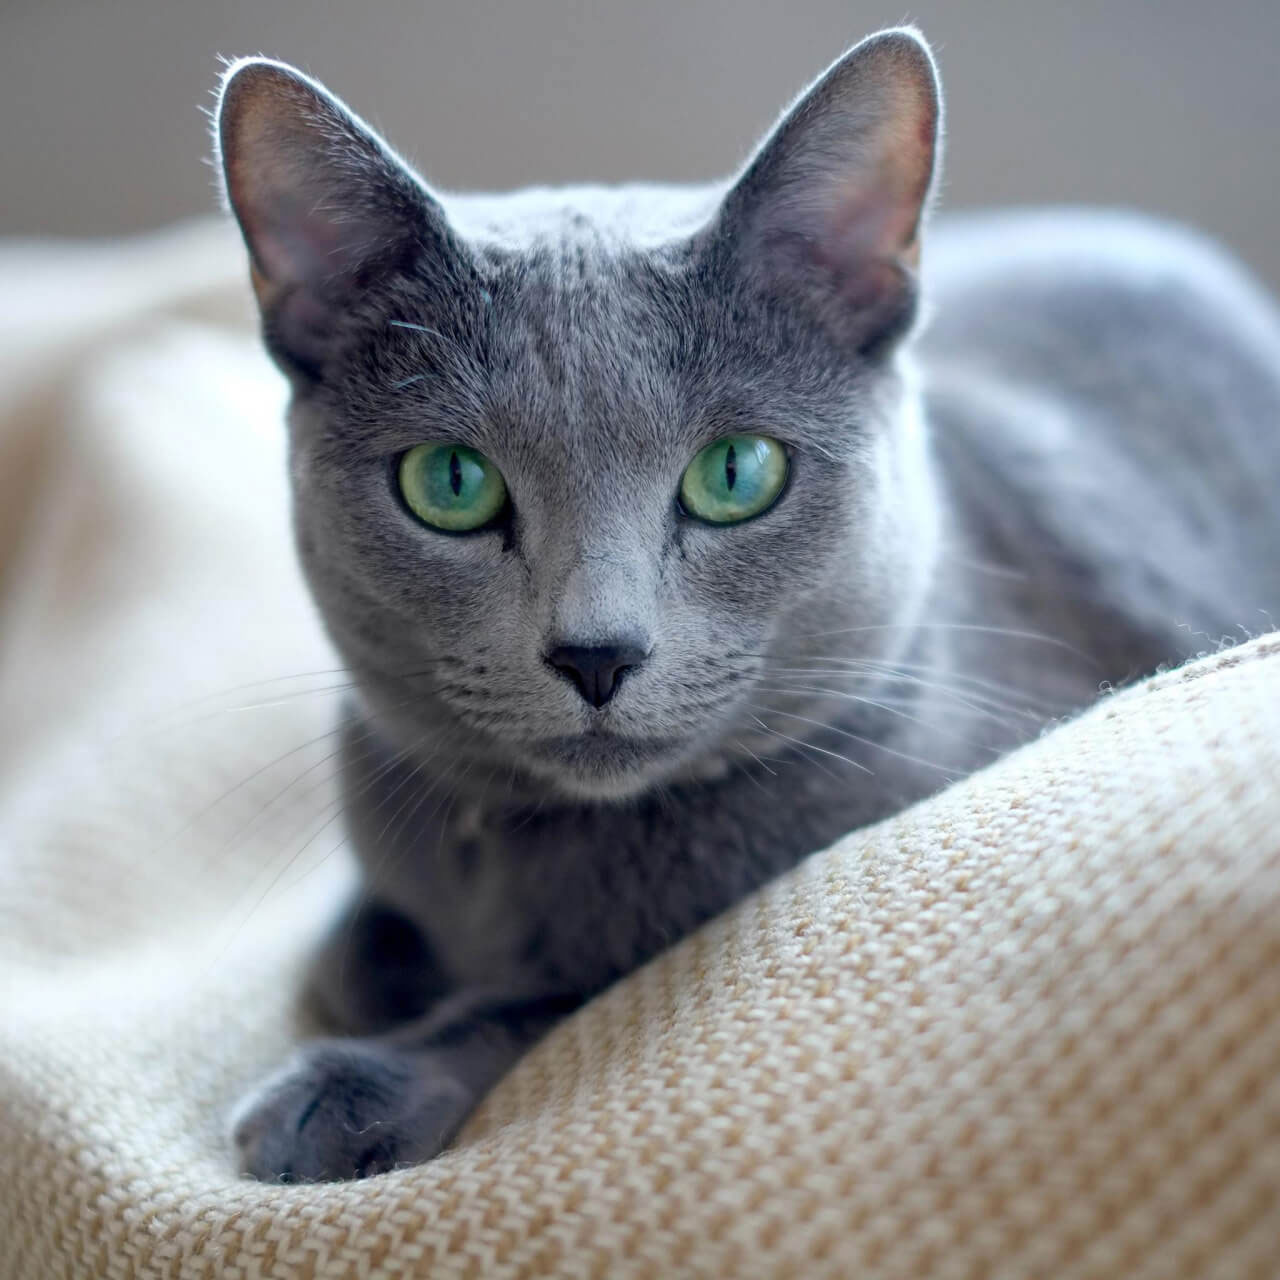 Gato azul ruso